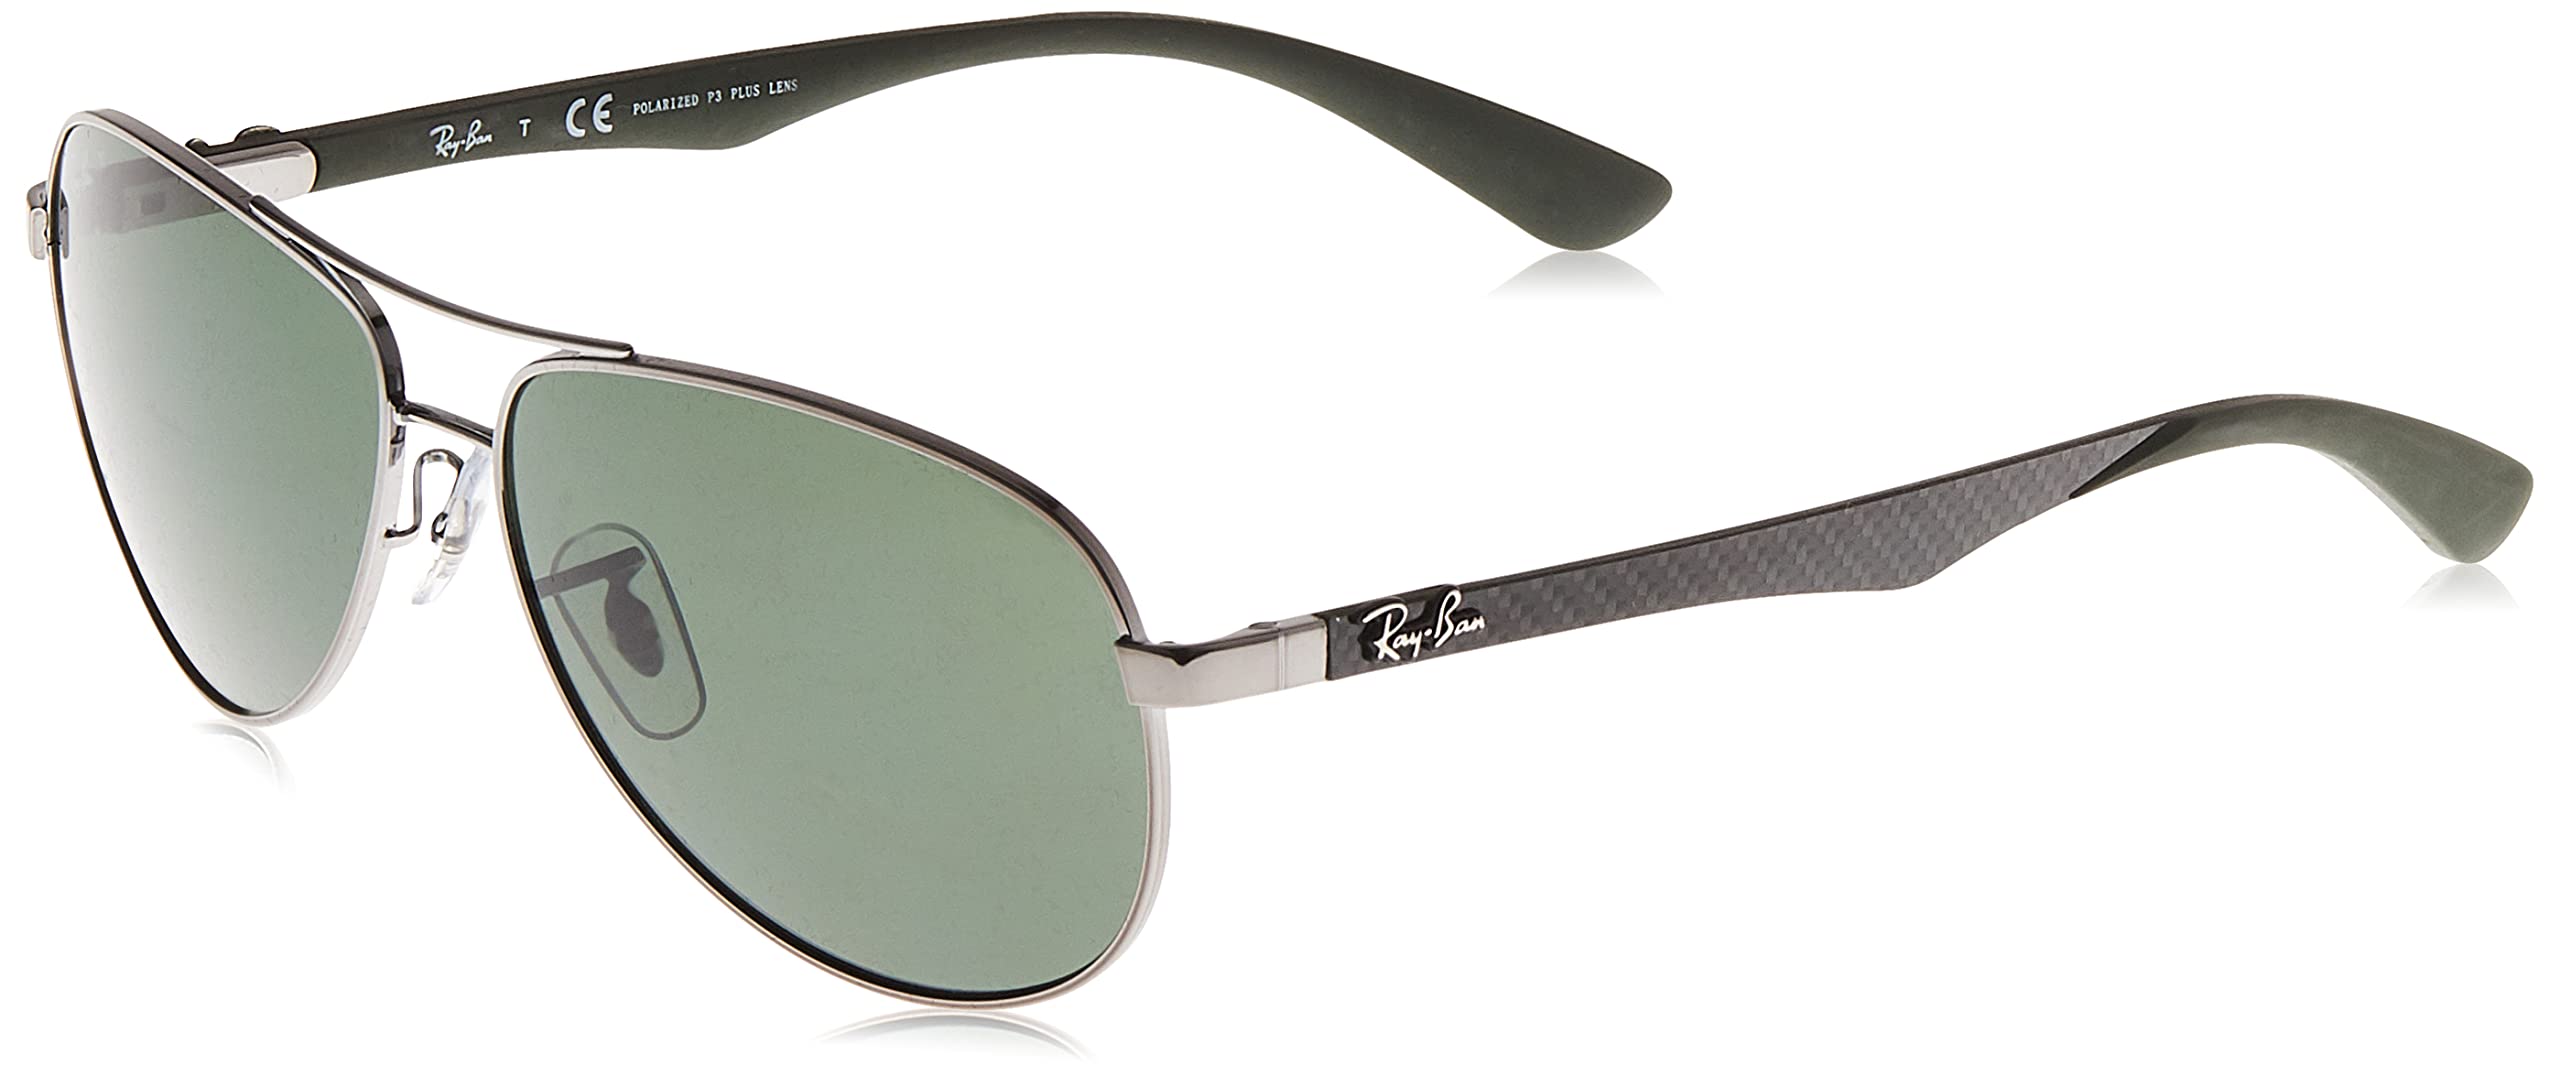 Mua Ray Ban Unisex Sunglasses RB8313 004/N5 58, Size: 58, Multicolor  (Frame: Gunmetal / Gray / Green, Lens: Polarized Green Classic 004 / N5)  trên Amazon Anh chính hãng 2023 | Giaonhan247